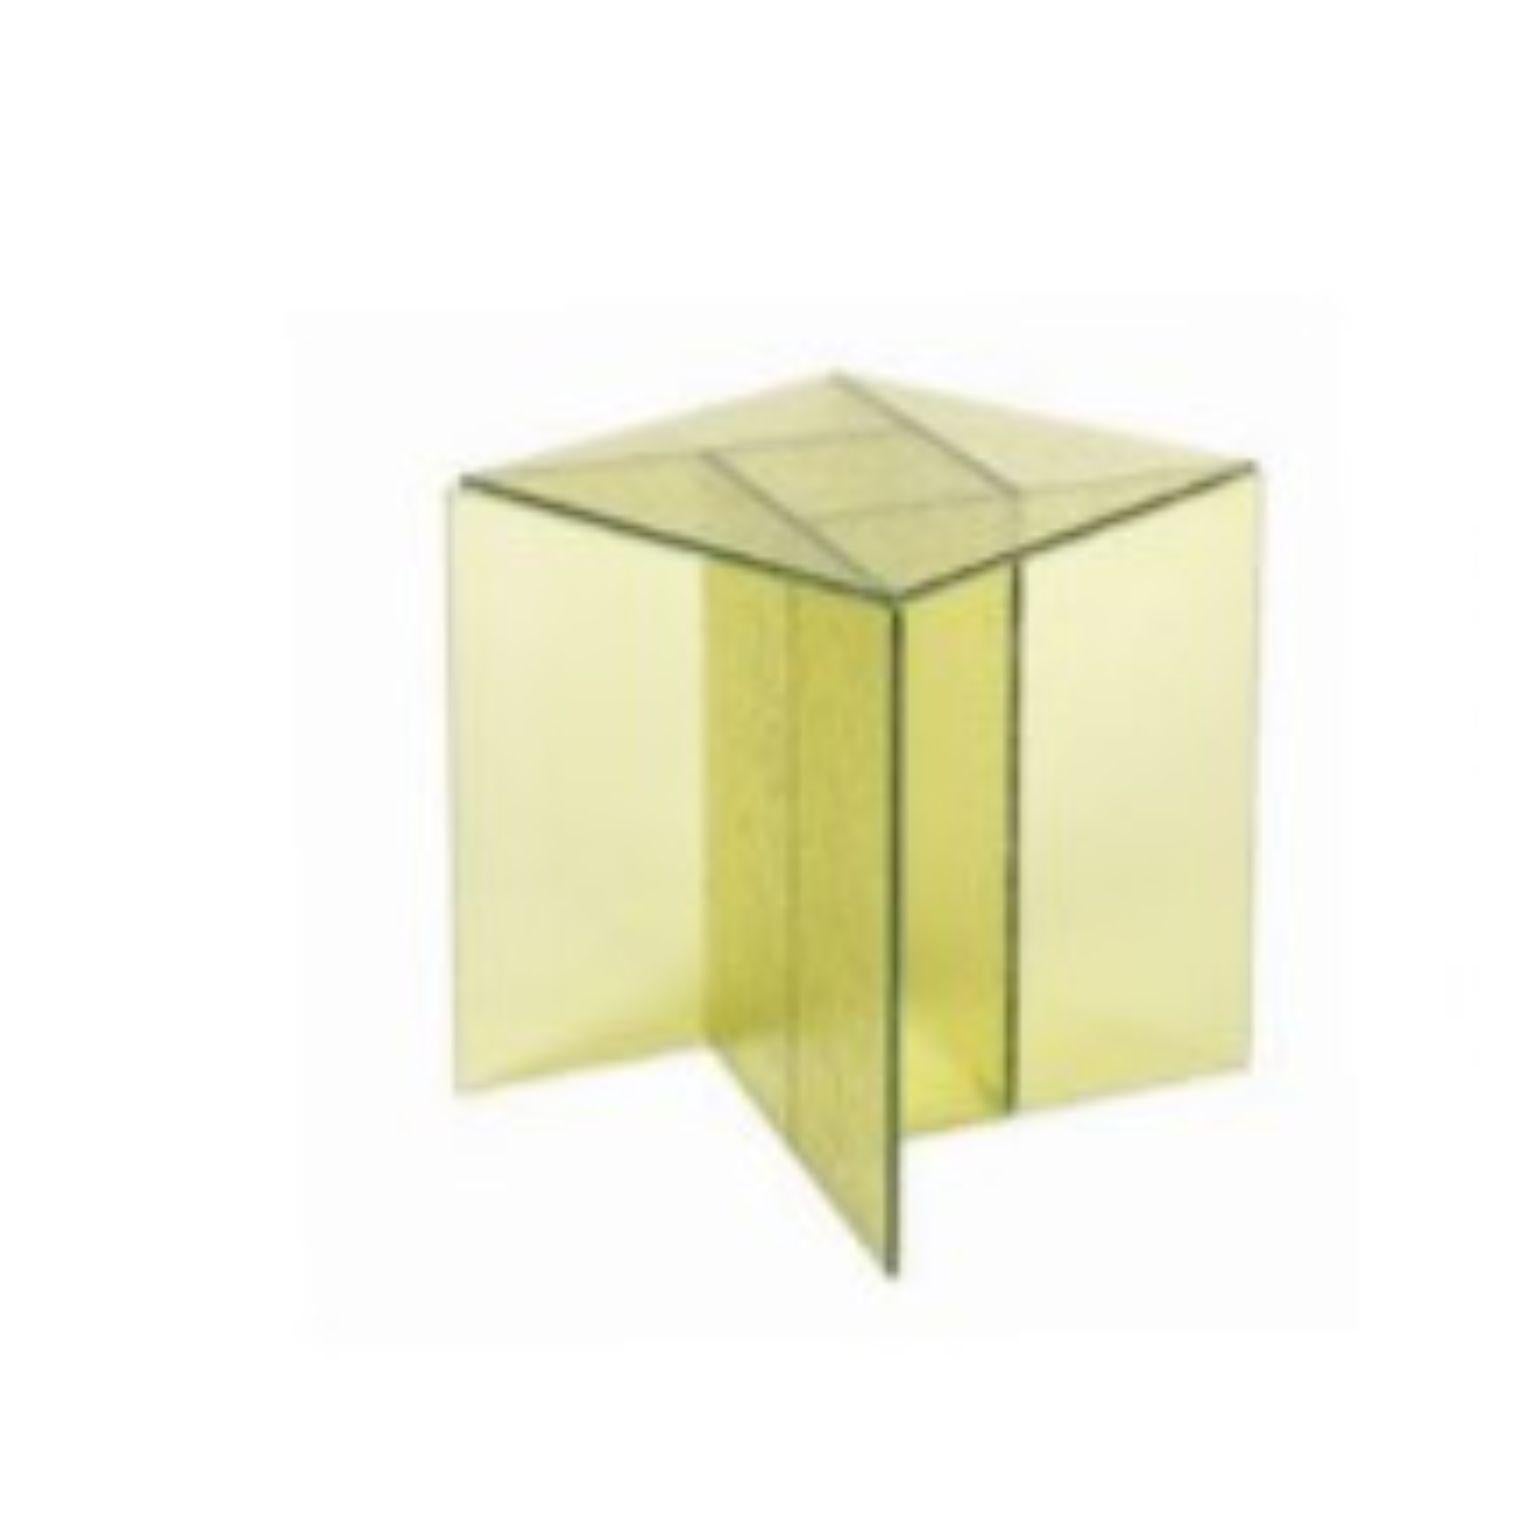 Aspa kleiner beistelltisch by Pulpo
Abmessungen: T40 x B40 x H50 cm
MATERIALIEN: Glas

Auch in verschiedenen Farben erhältlich. 

Abwechslung ist ein Vergnügen. Aspa, das Beistelltischkonzept des spanischen Designstudios MUT, ist eine einfache